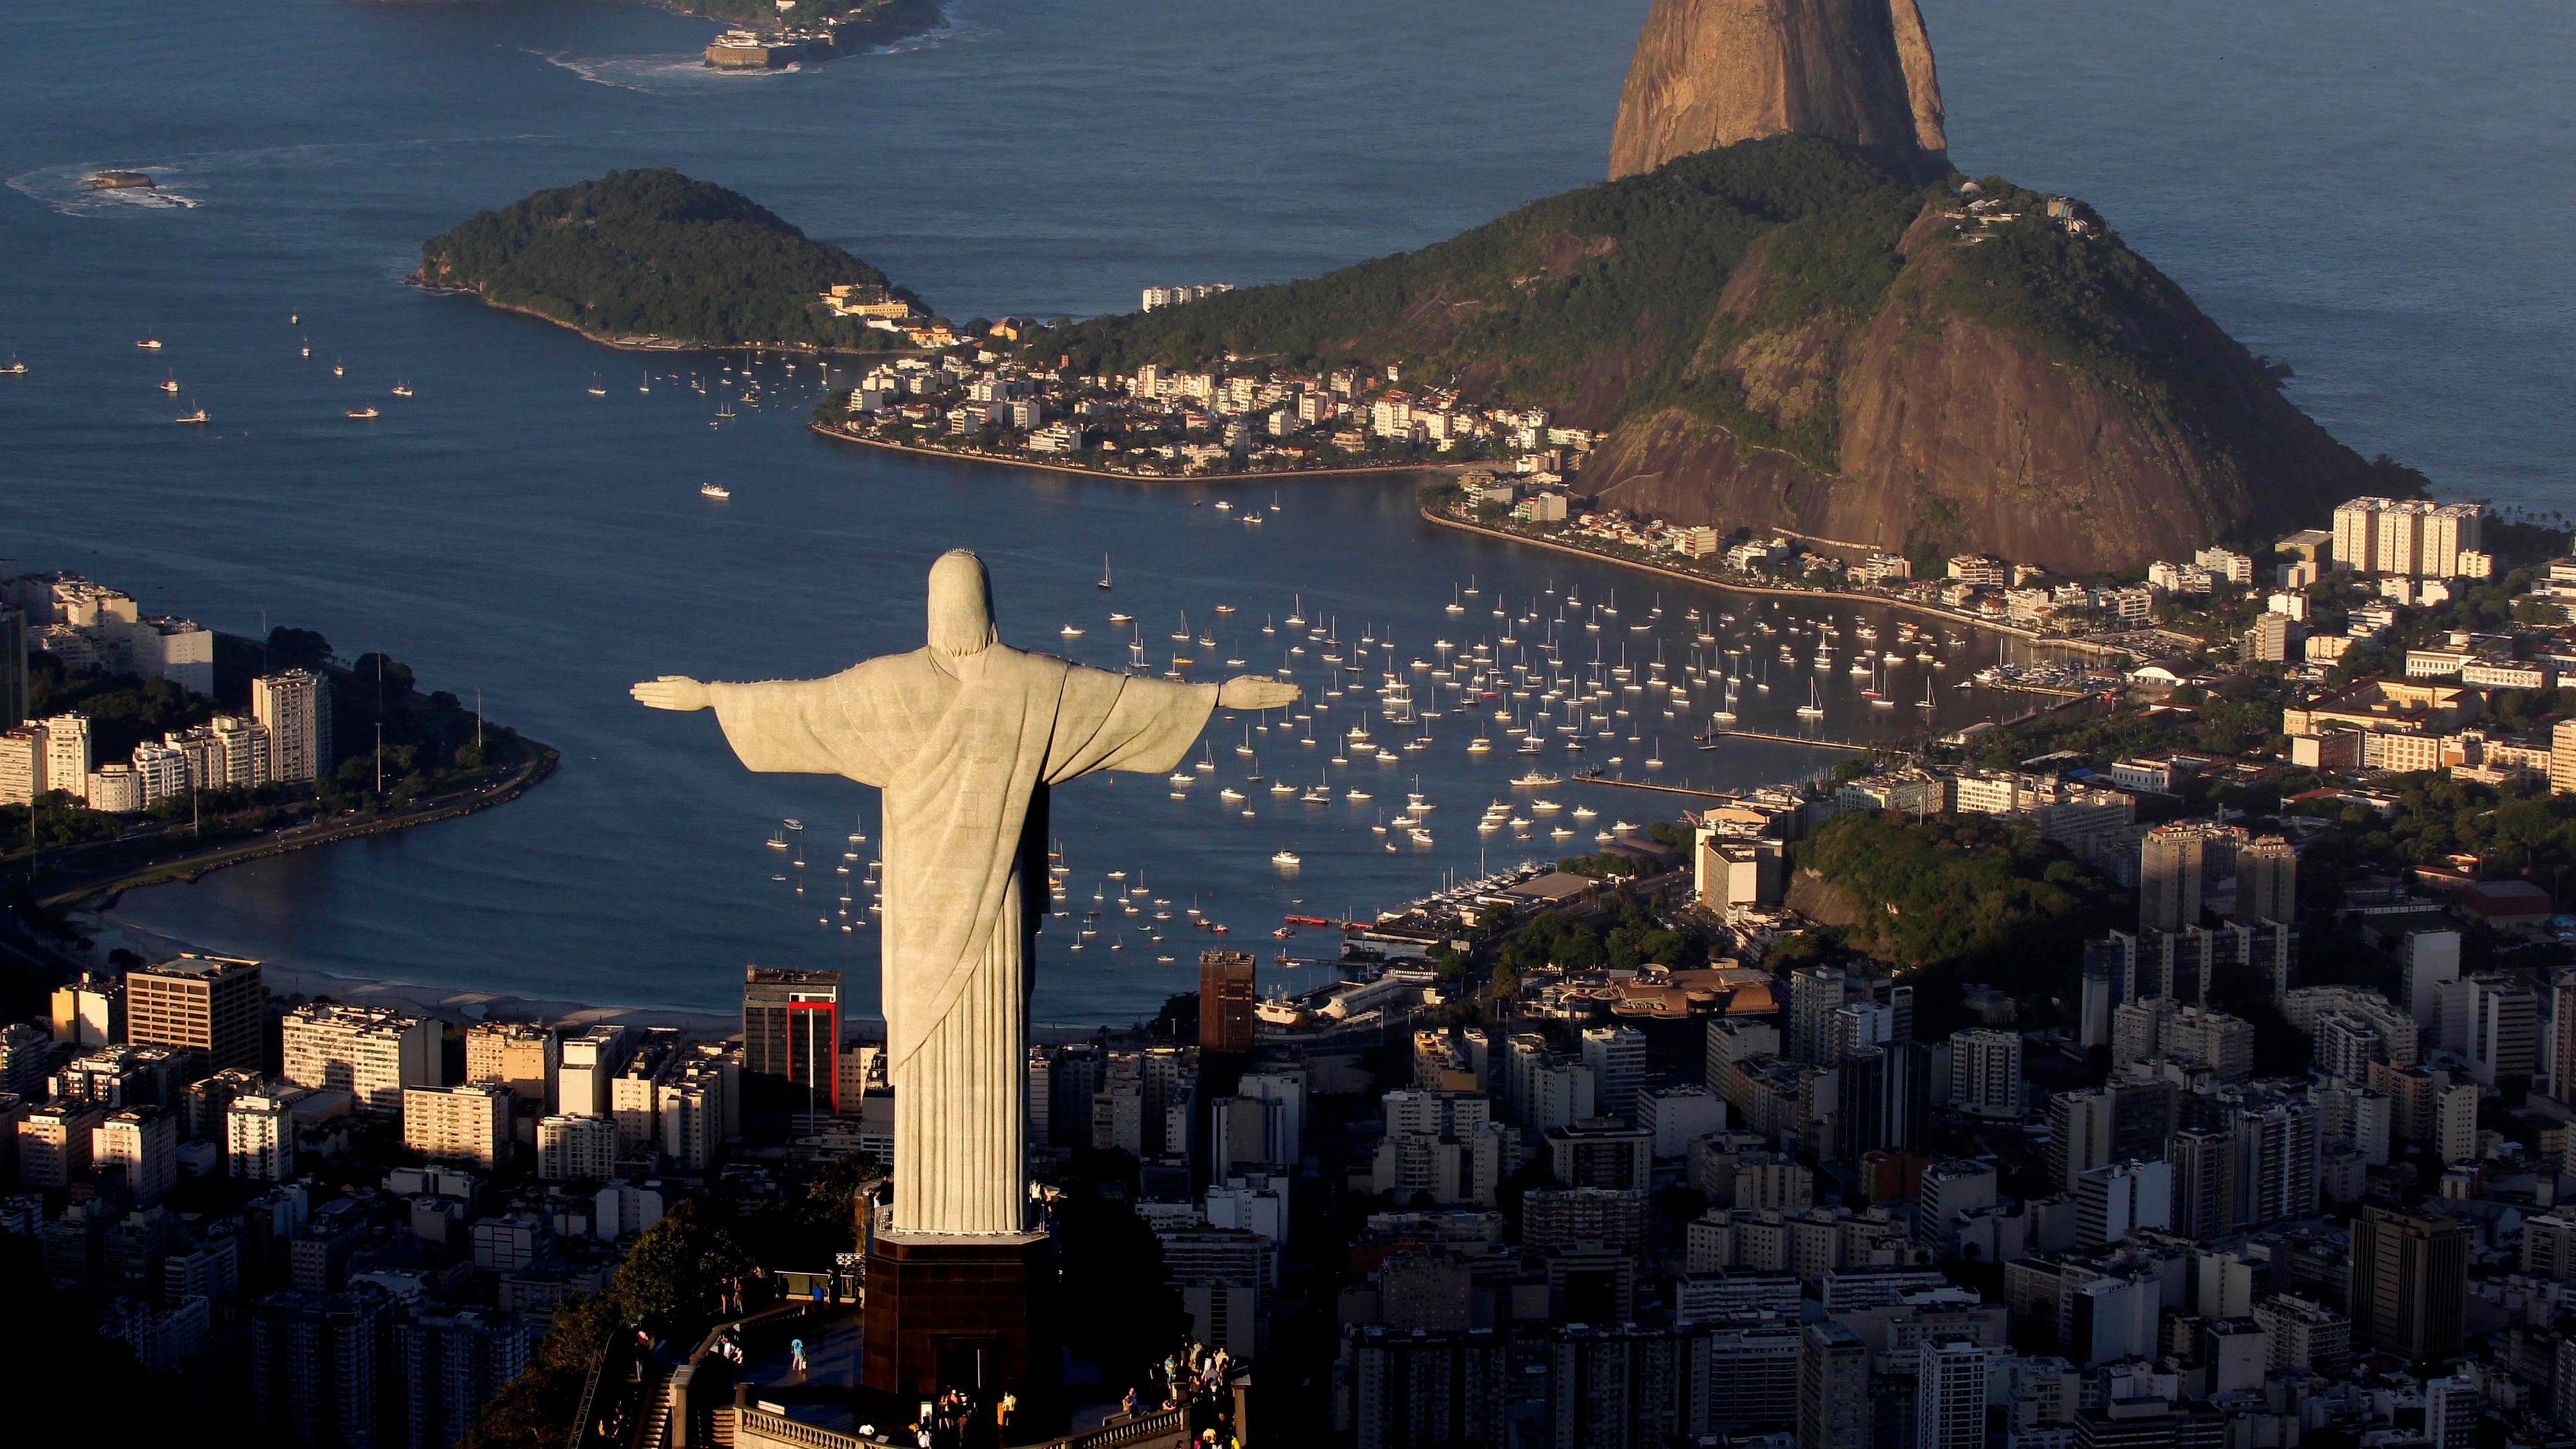 Die Christusstatue auf dem Berg Corcovado in Rio de Janeiro in Brasilien.